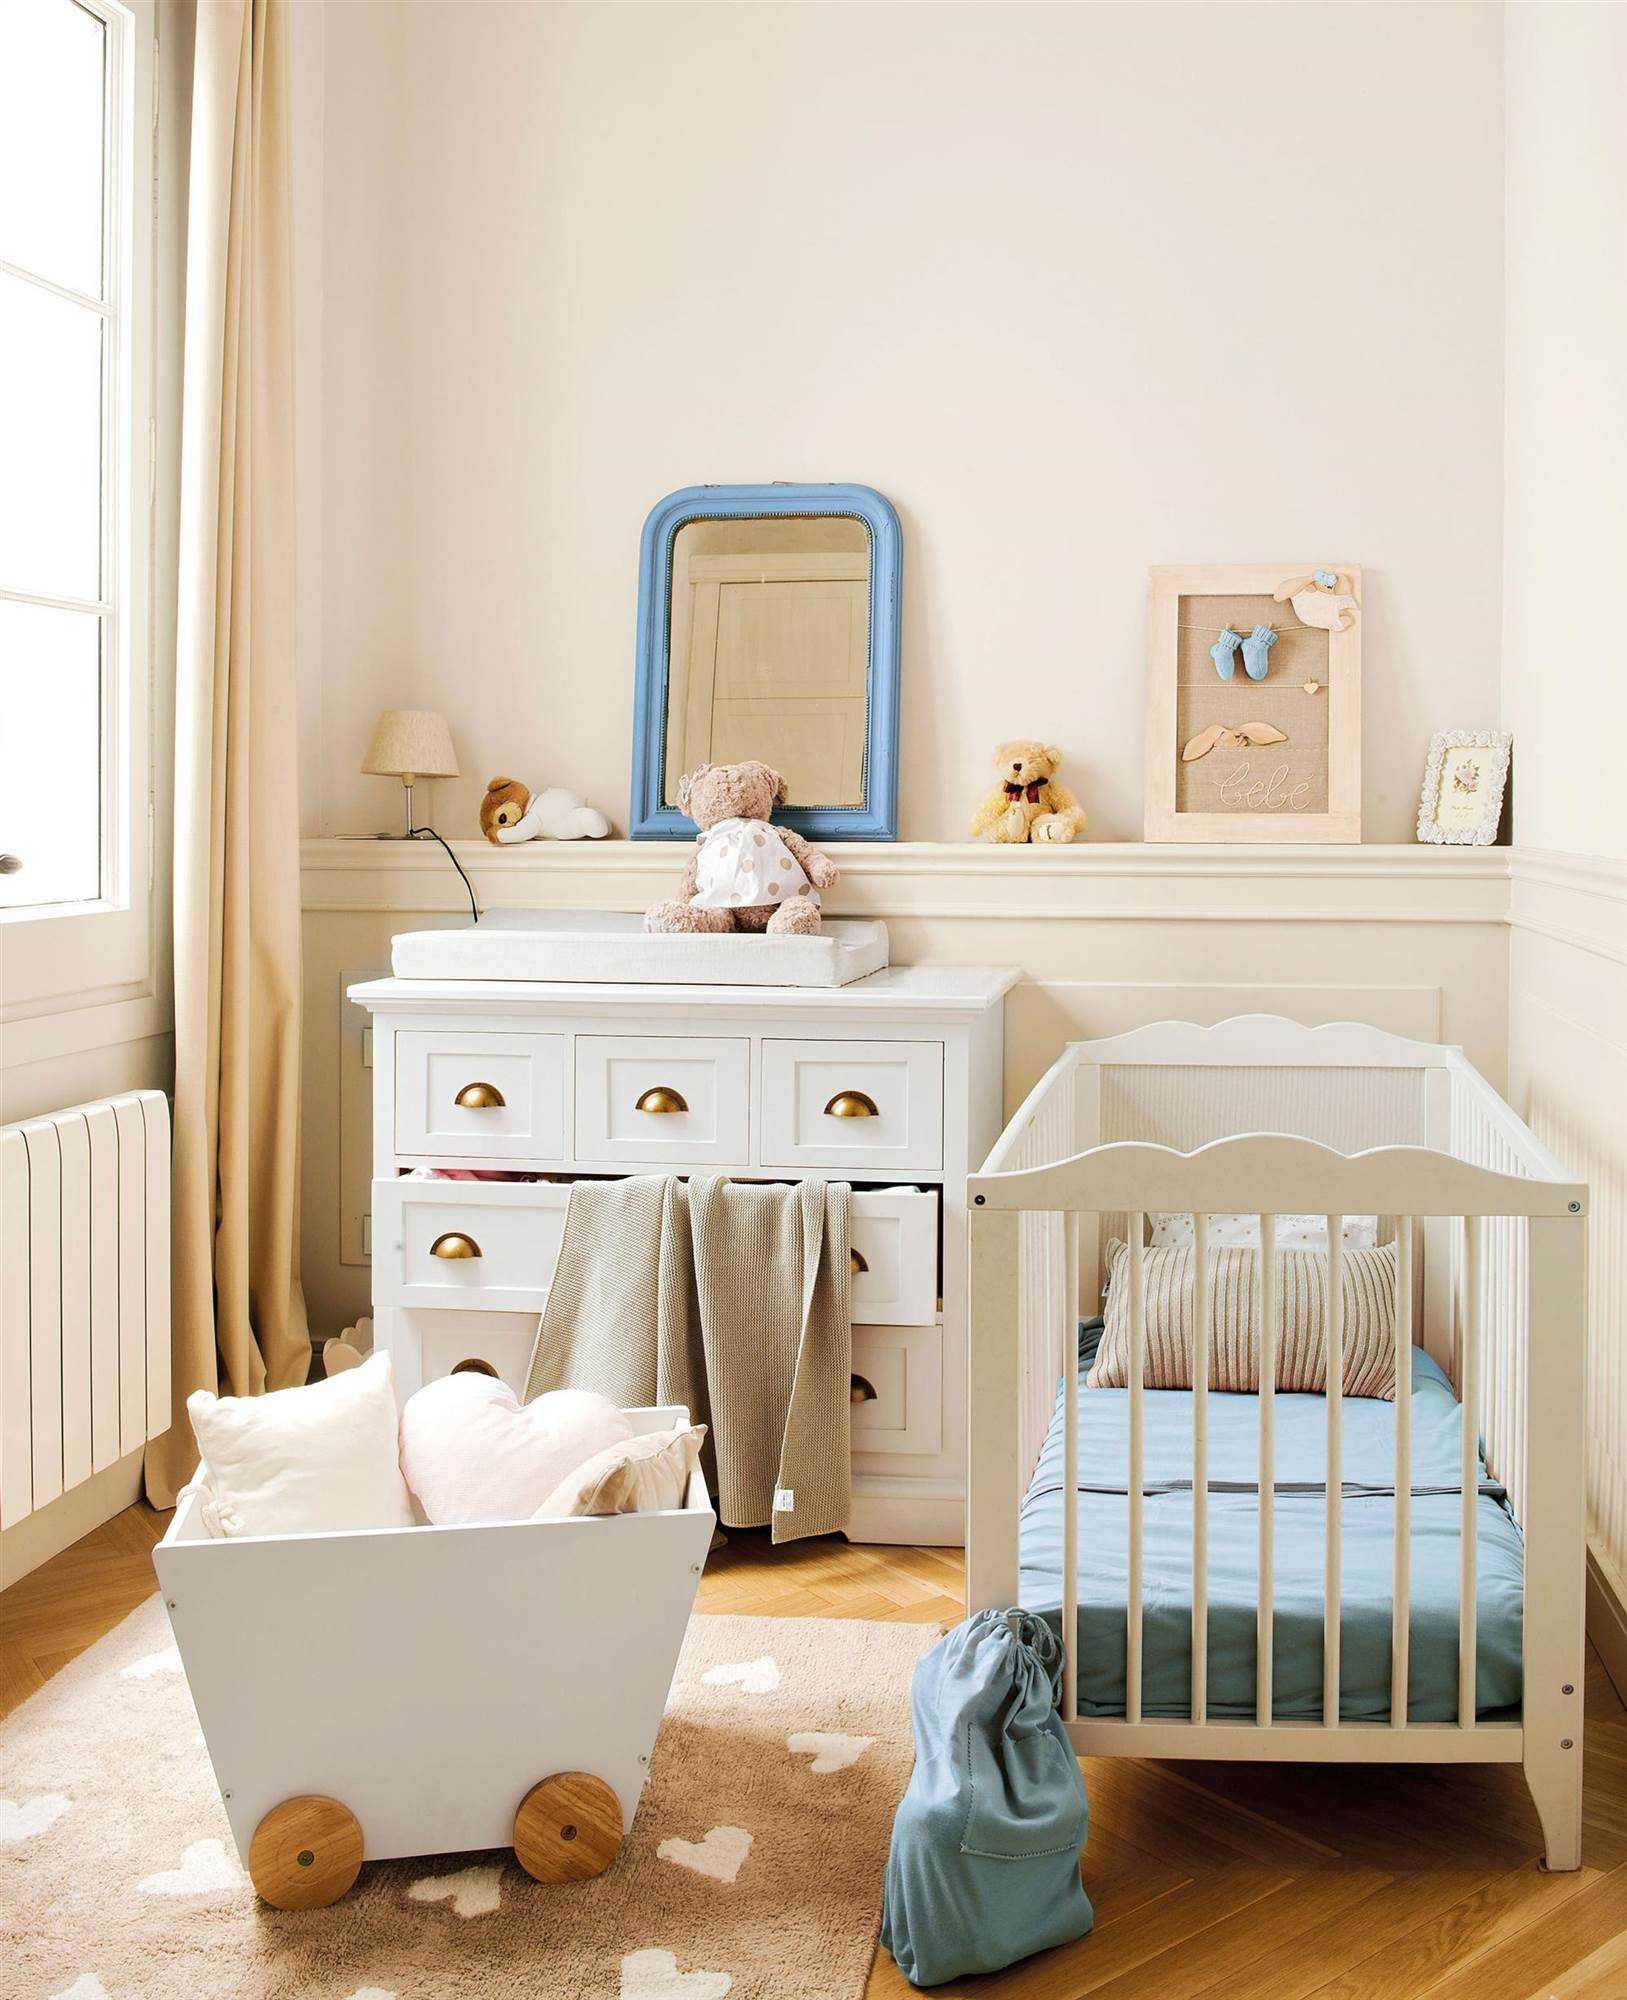 Baby bedroom. Комната для новорожденного мальчика. Детская комната для младенца. Детские комнаты для новорожденных. Интерьер детской для новорожденного.